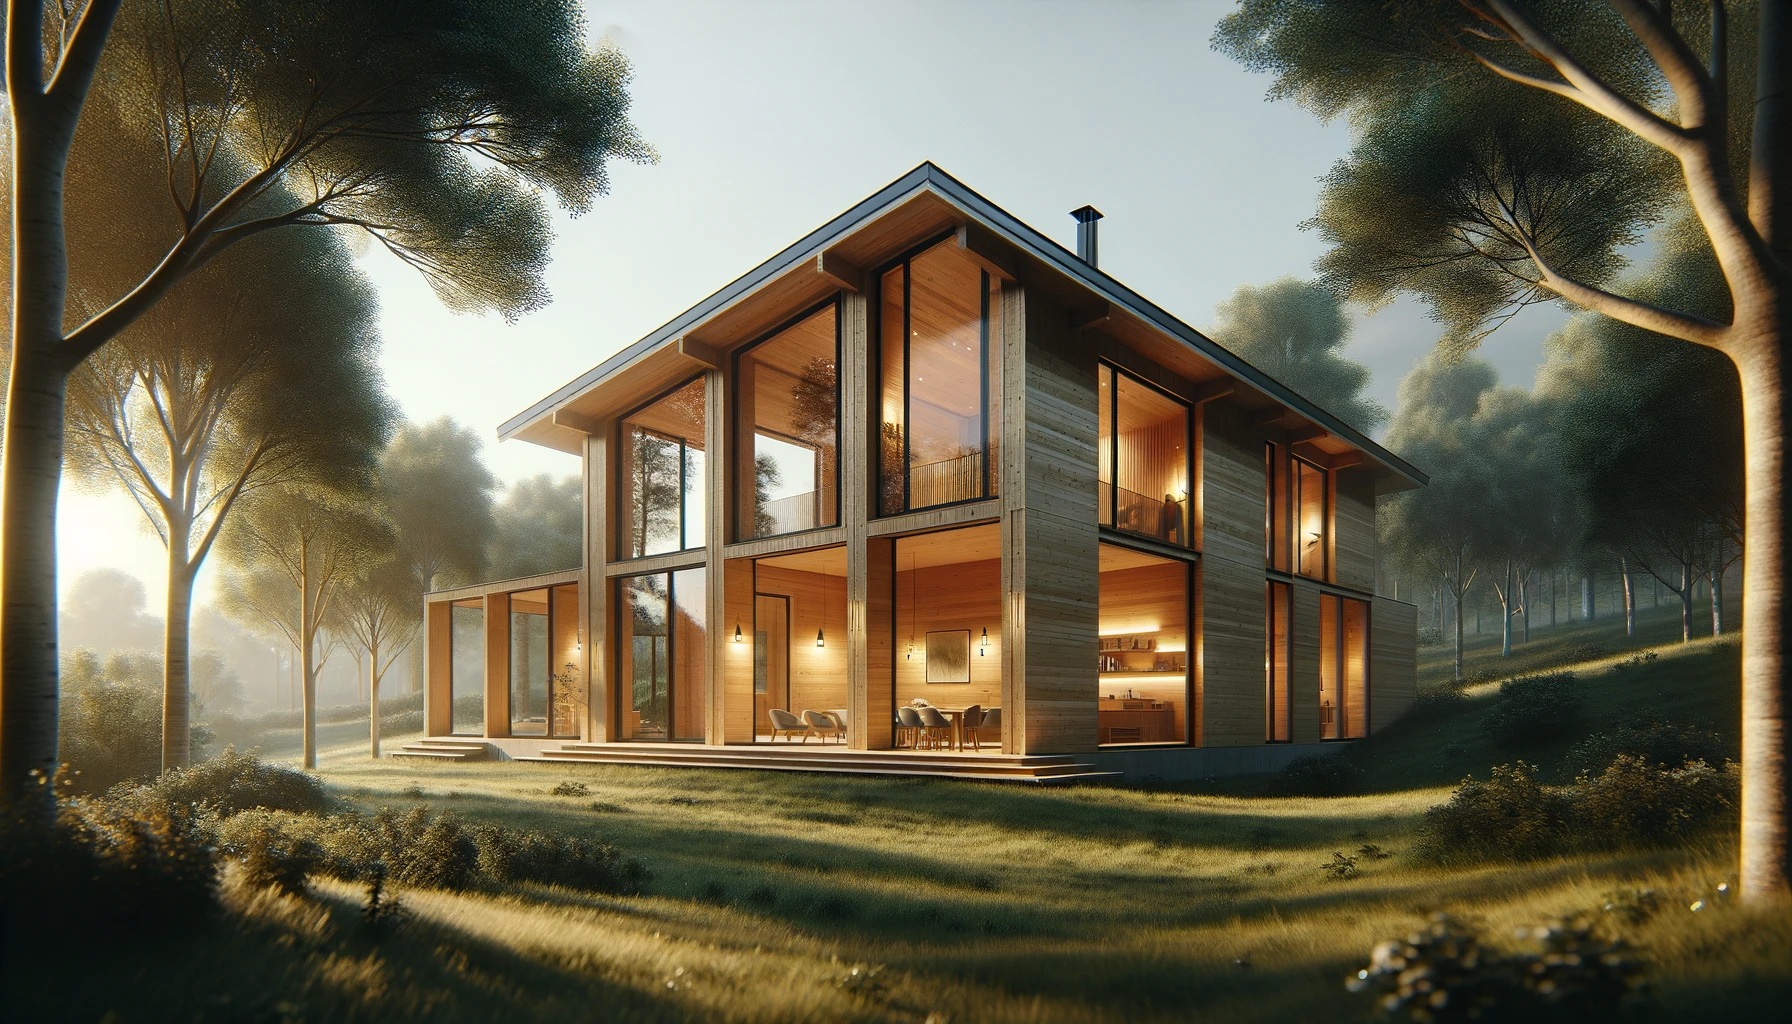 hermosa casa de madera moderna situada en un paisaje natural tranquilo con grandes ventanas que permiten la entrada de mucha luz natural